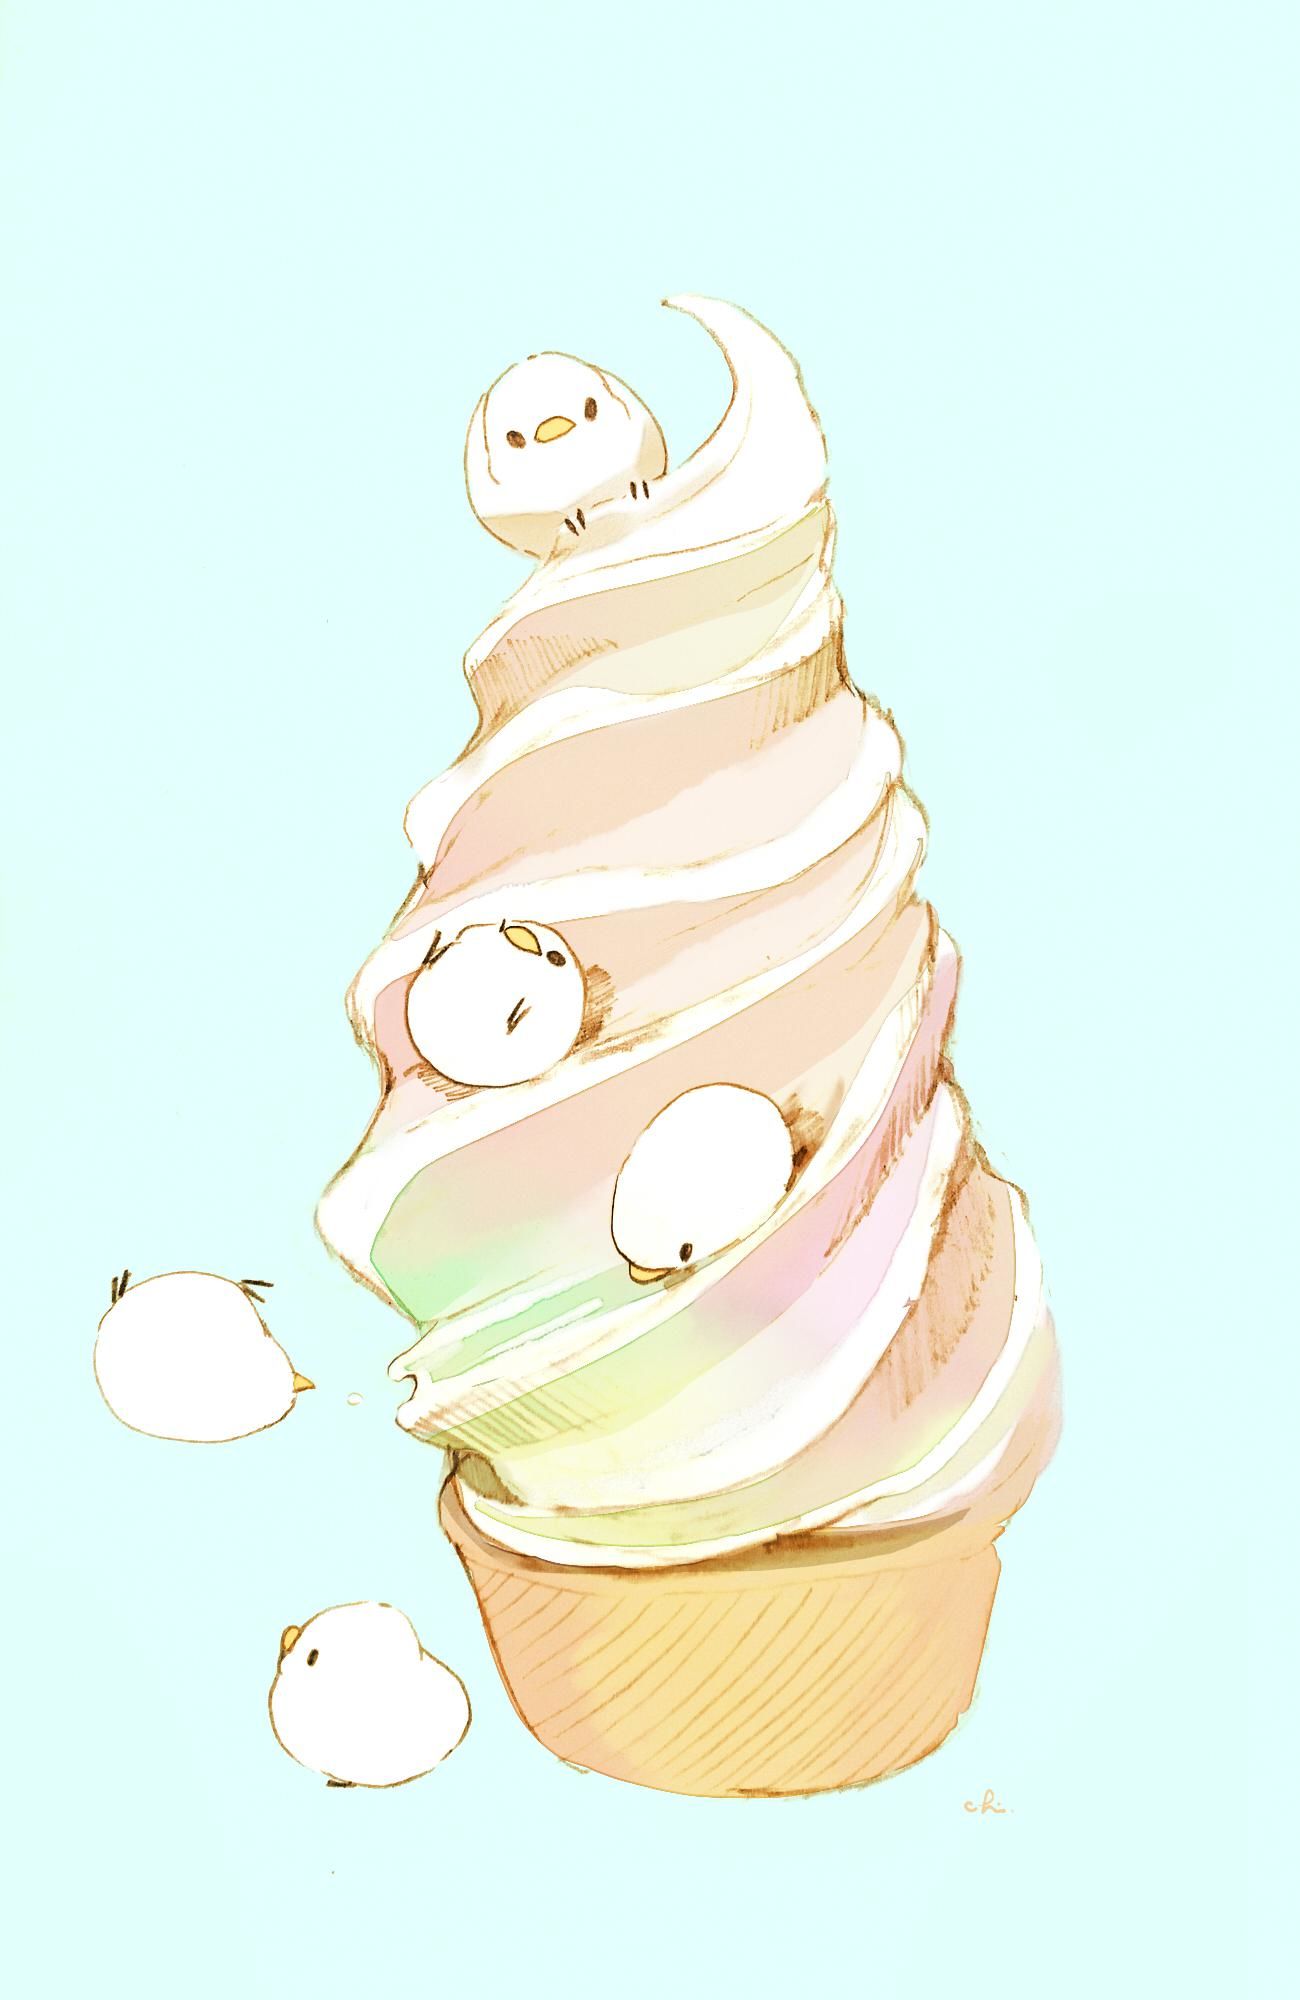 冰淇淋滑梯插画图片壁纸